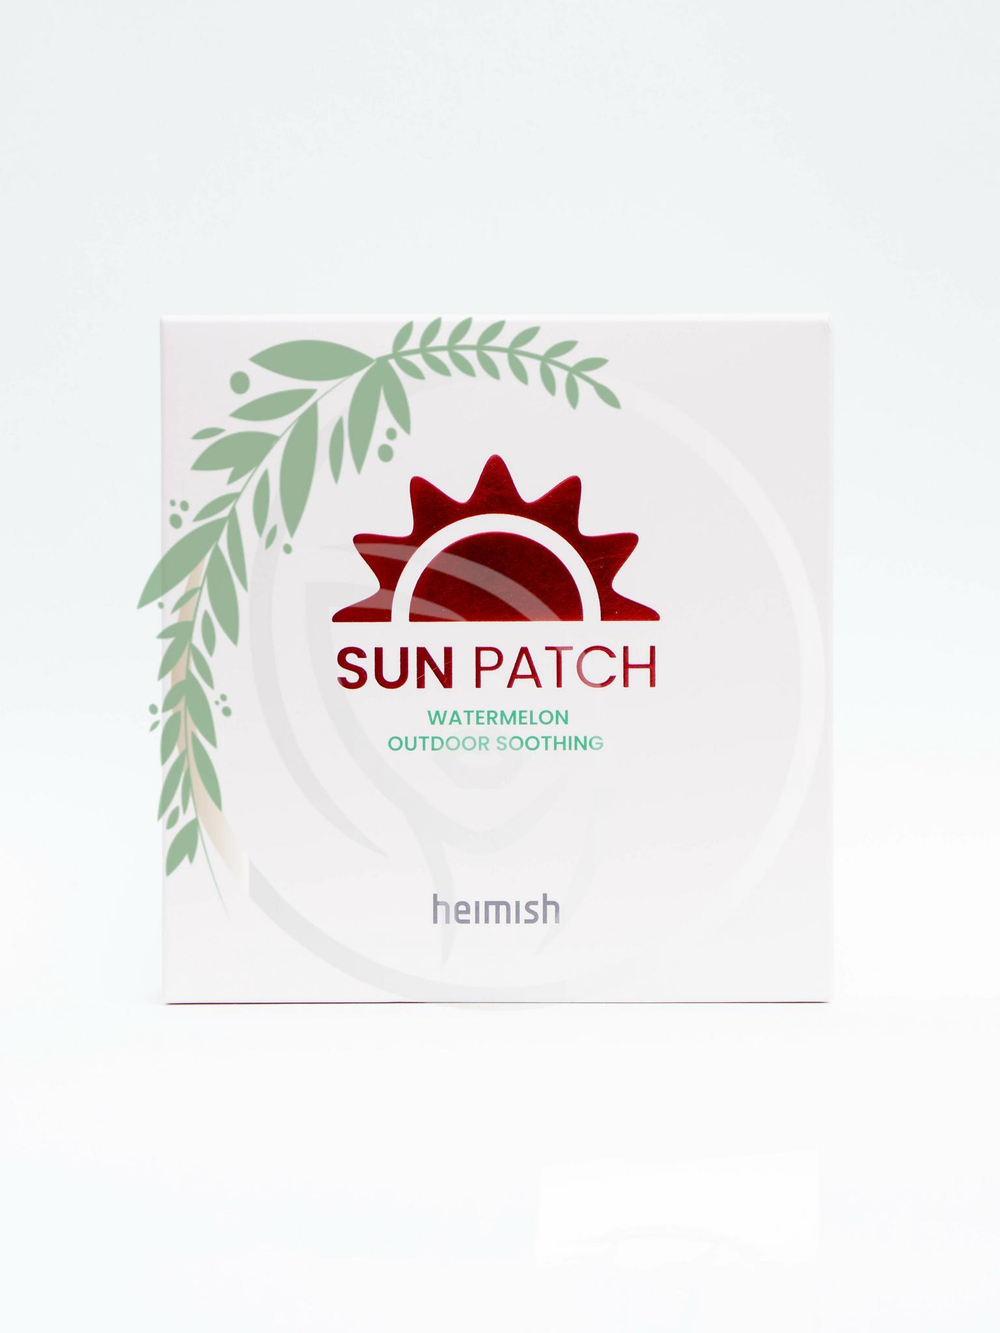 Охлаждающие солнцезащитные патчи - Heimish Watermelon Outdoor Soothing Sun Patch, 1*5 шт